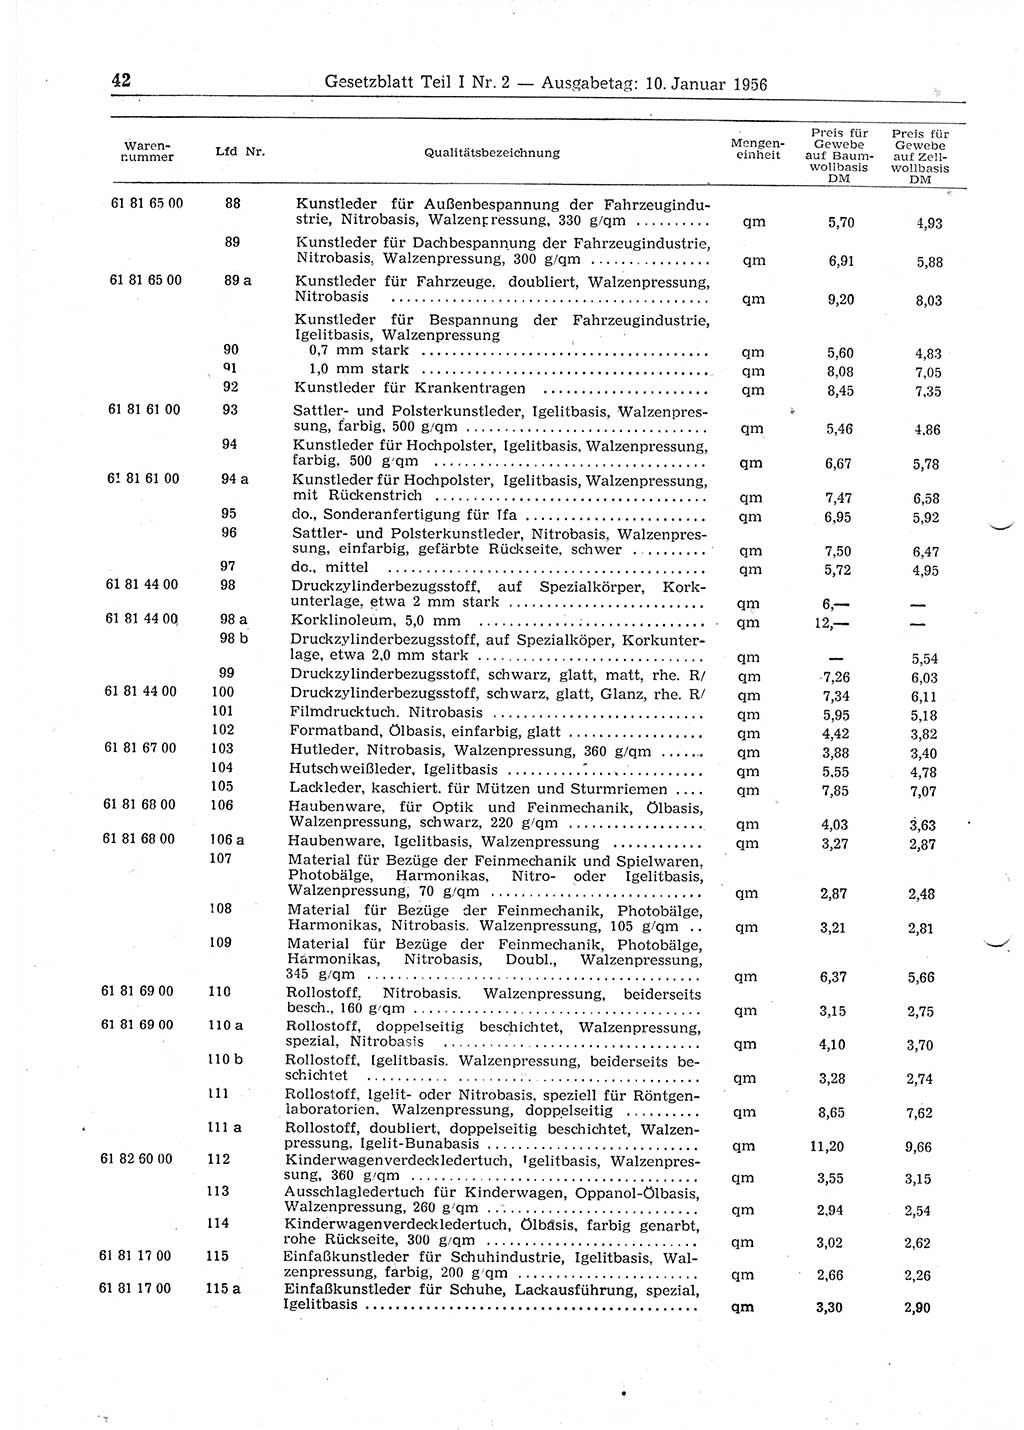 Gesetzblatt (GBl.) der Deutschen Demokratischen Republik (DDR) Teil Ⅰ 1956, Seite 42 (GBl. DDR Ⅰ 1956, S. 42)